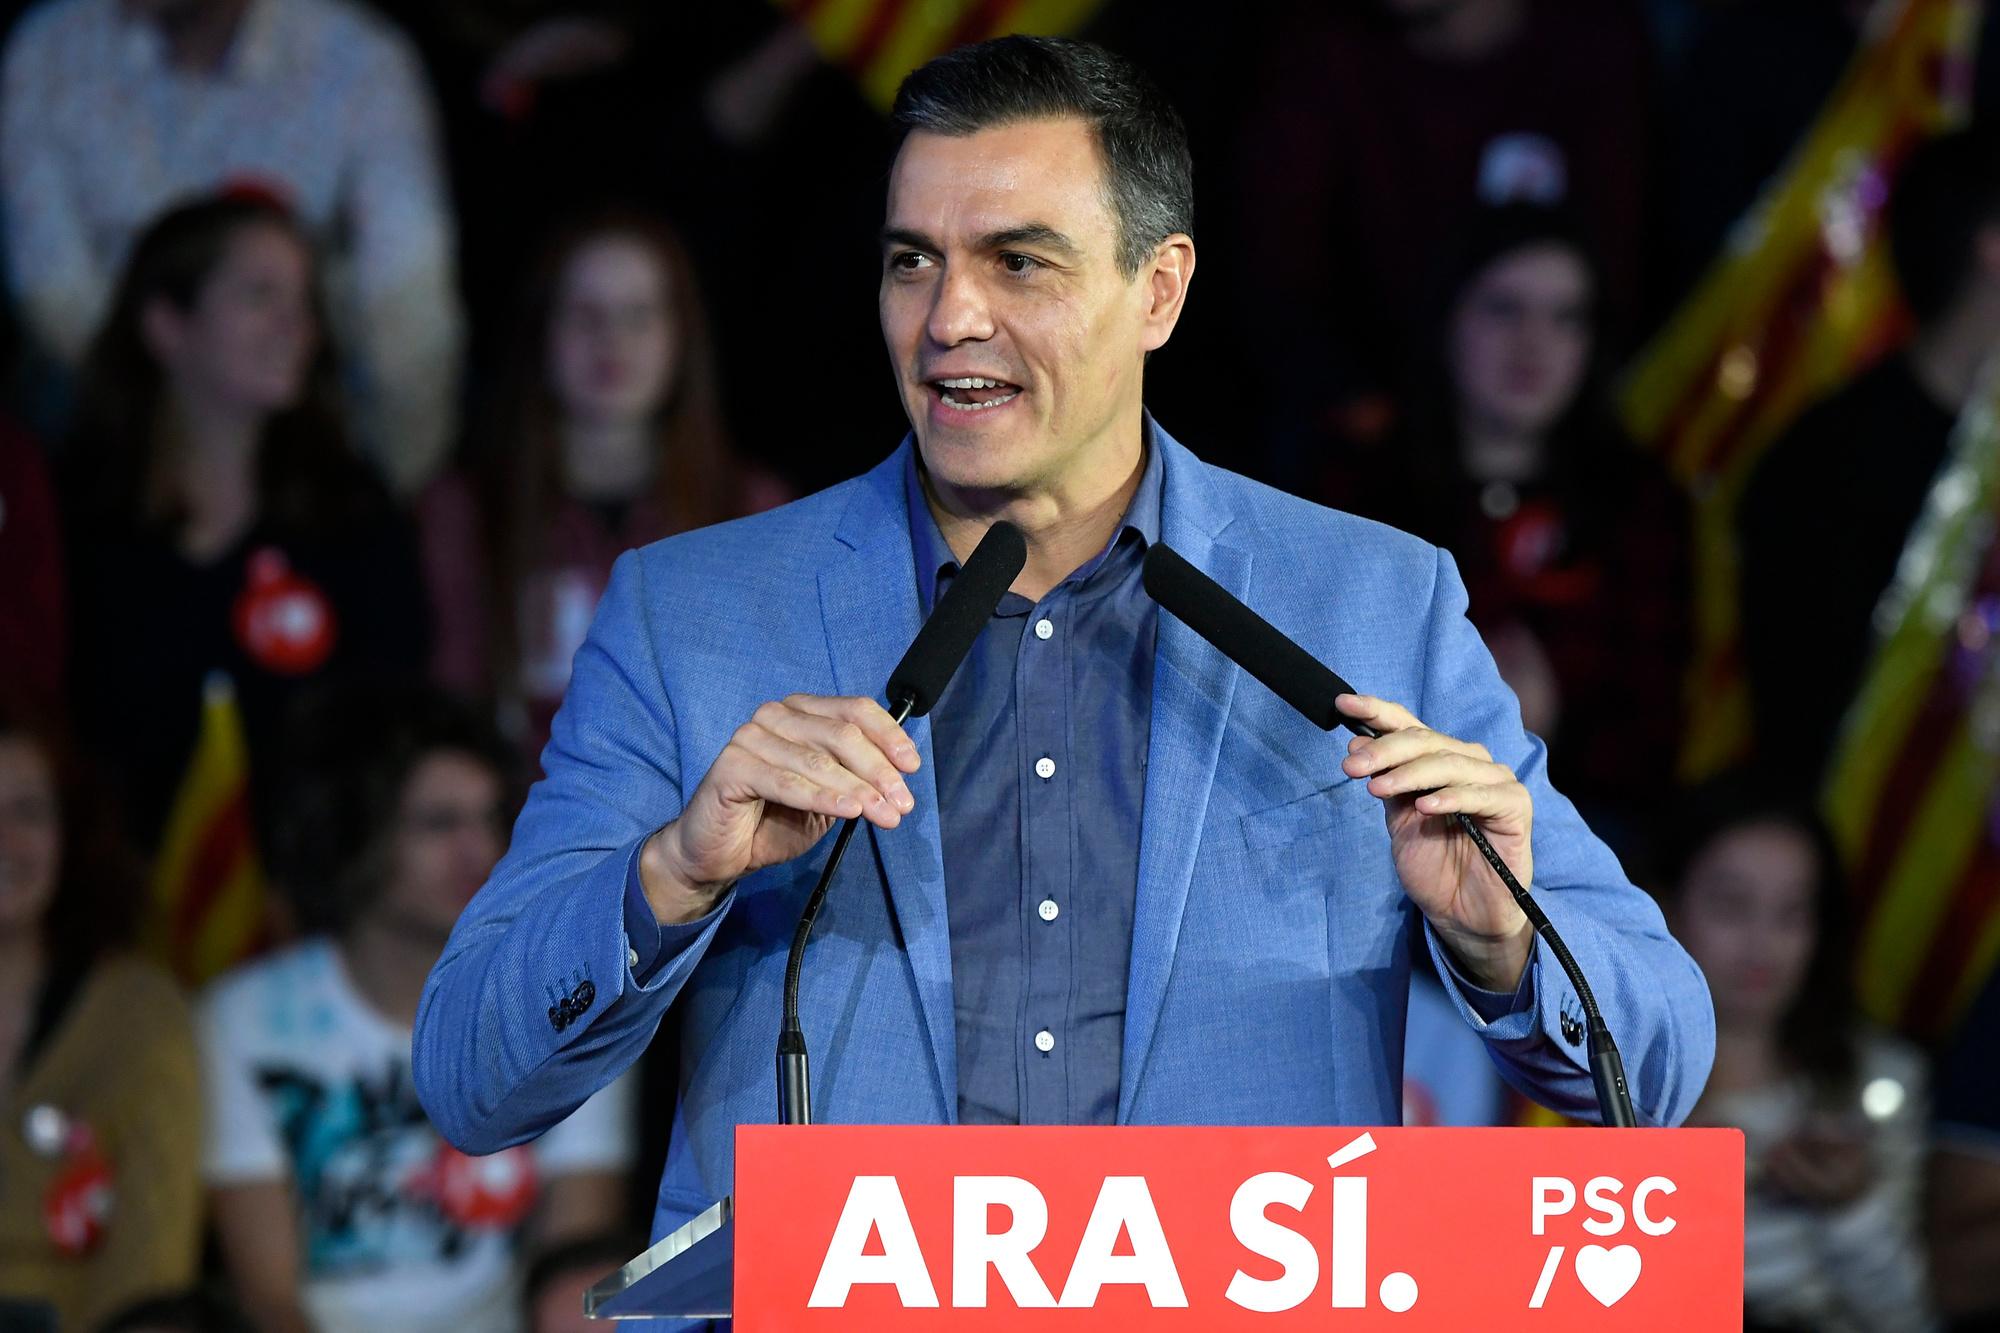 Espagne: les cinq principaux candidats aux élections